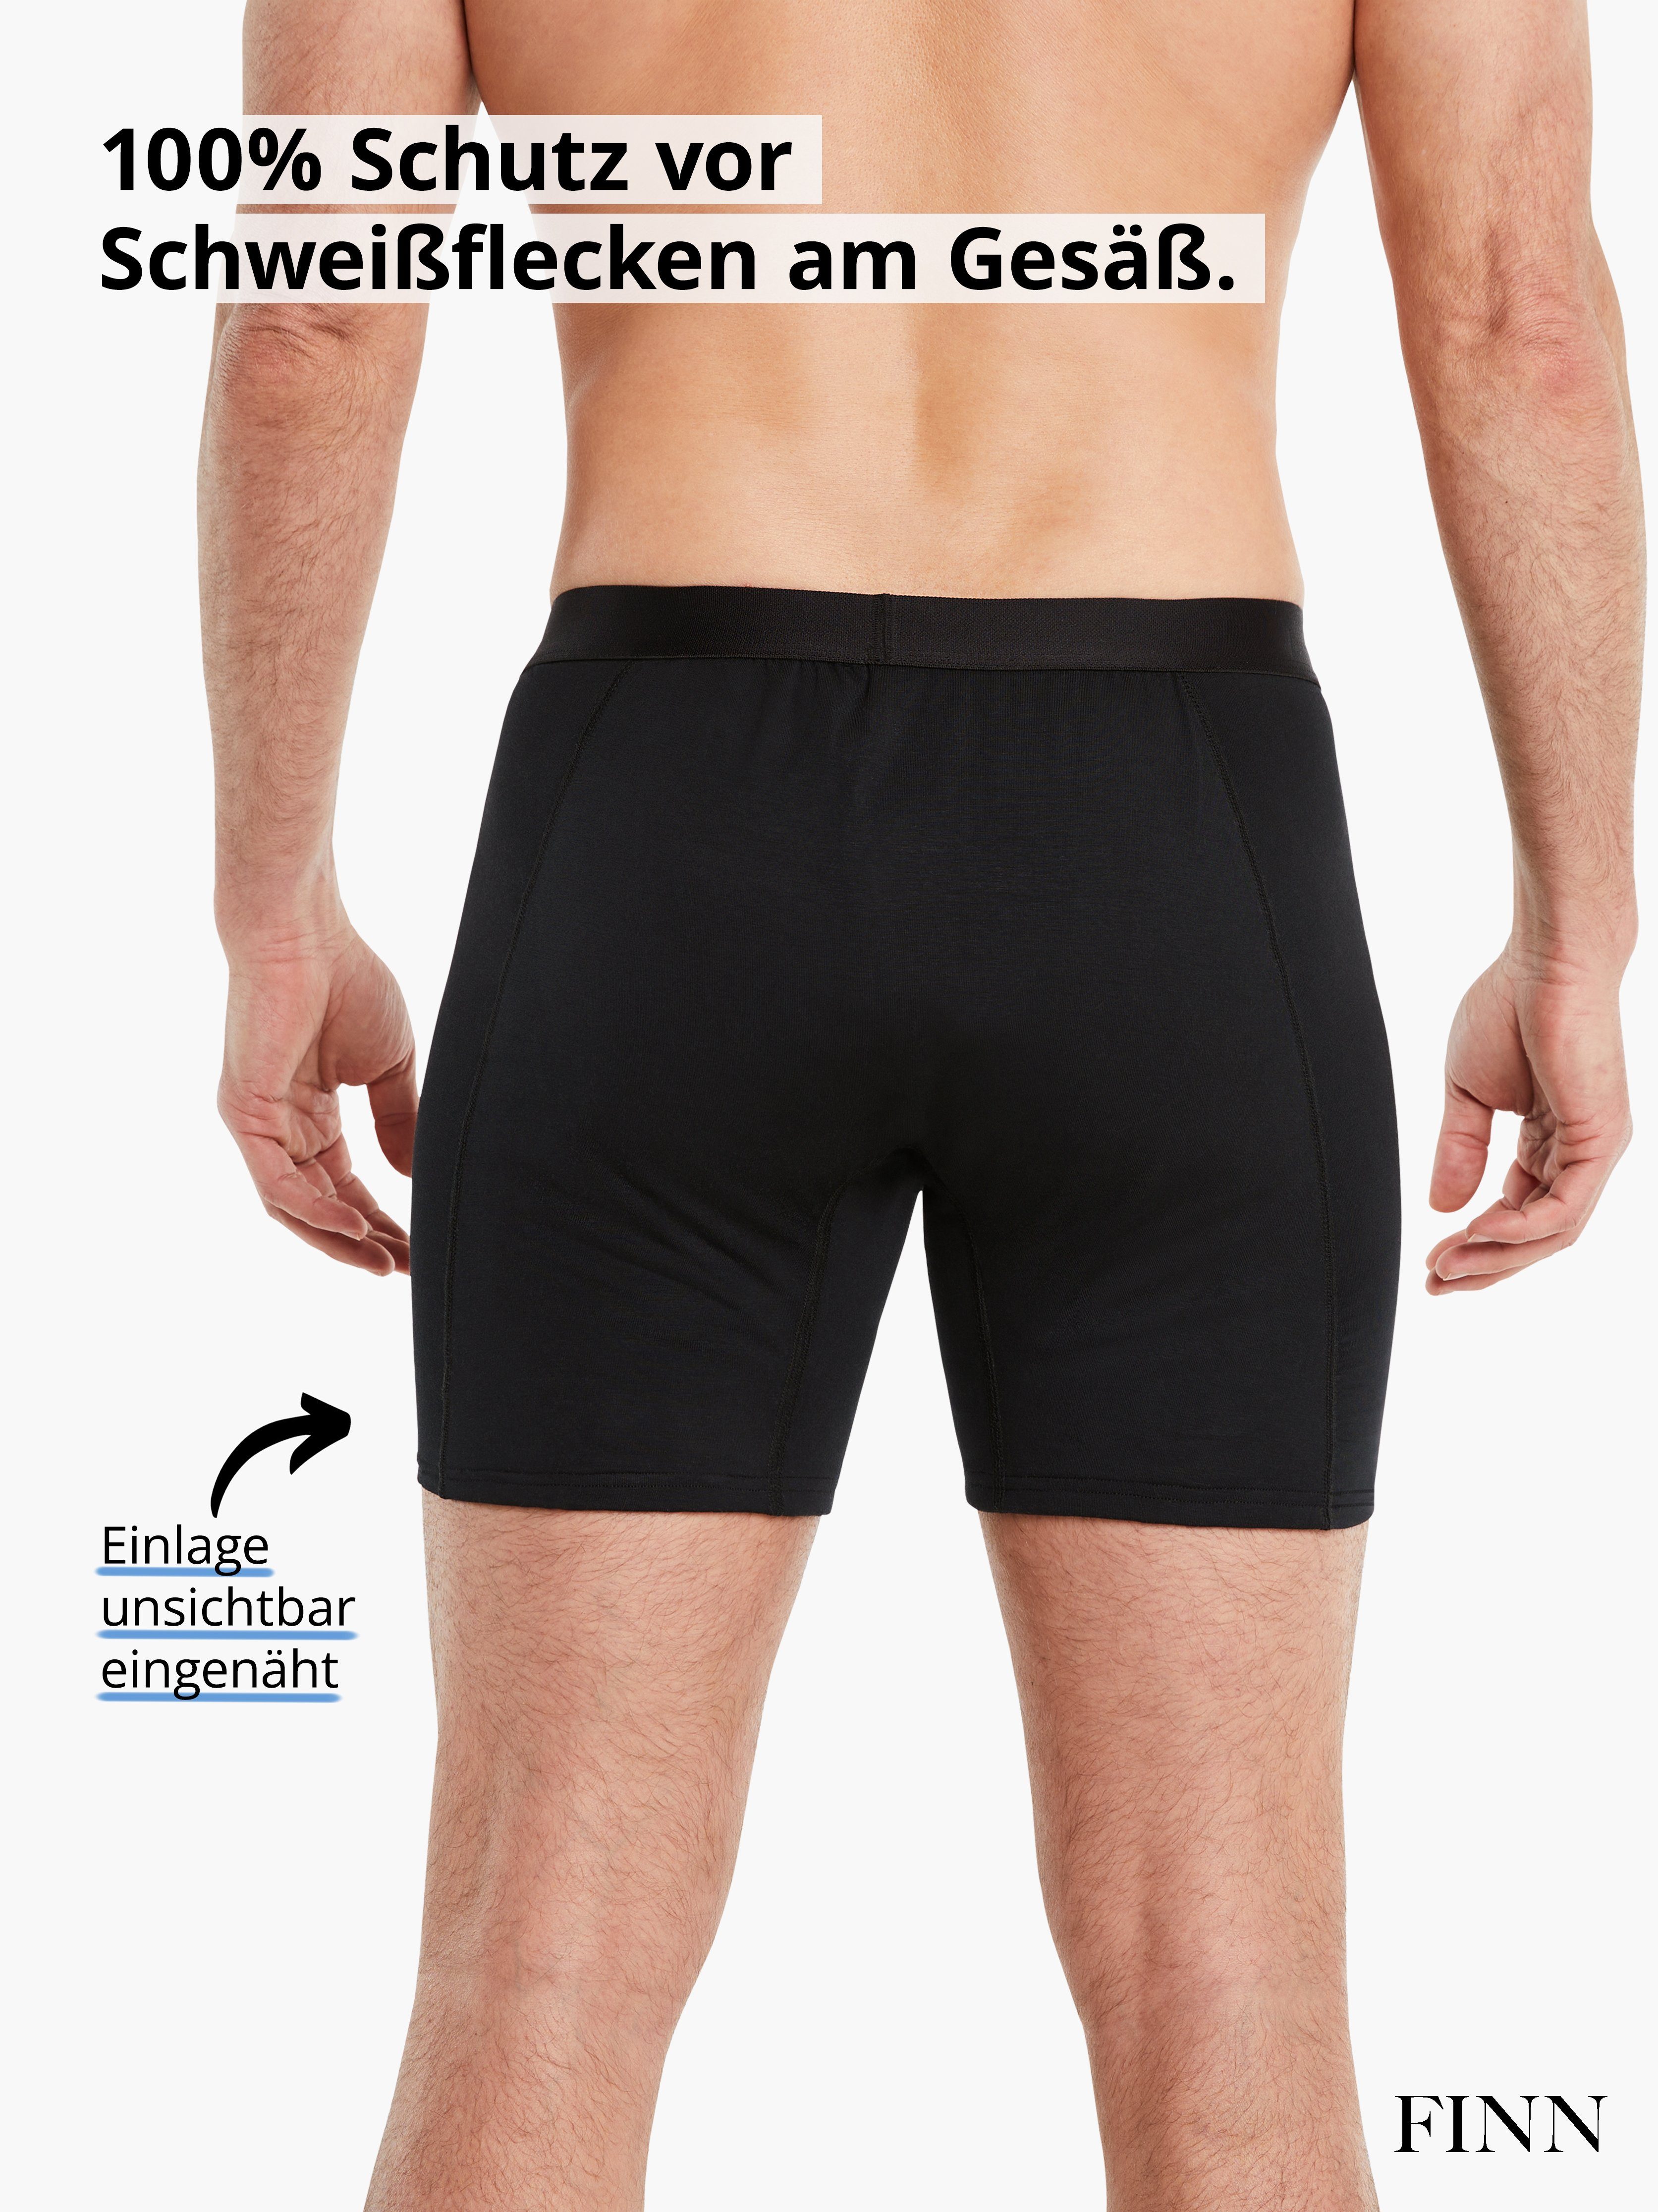 Schweißflecken, garantierte Design Boxershorts 100% Schwarz Herren Wirkung Schutz Anti-Schweiß FINN Boxershorts vor